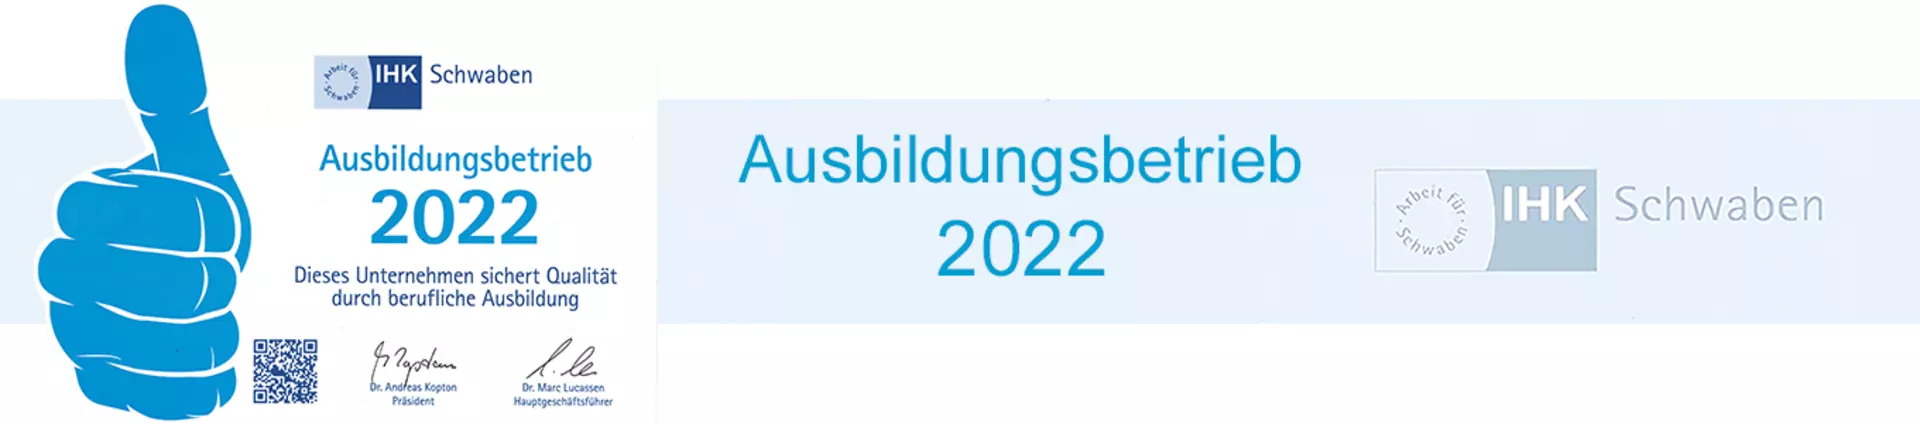 Möbel Inhofer ist IHK Ausbildungsbetrieb 2022